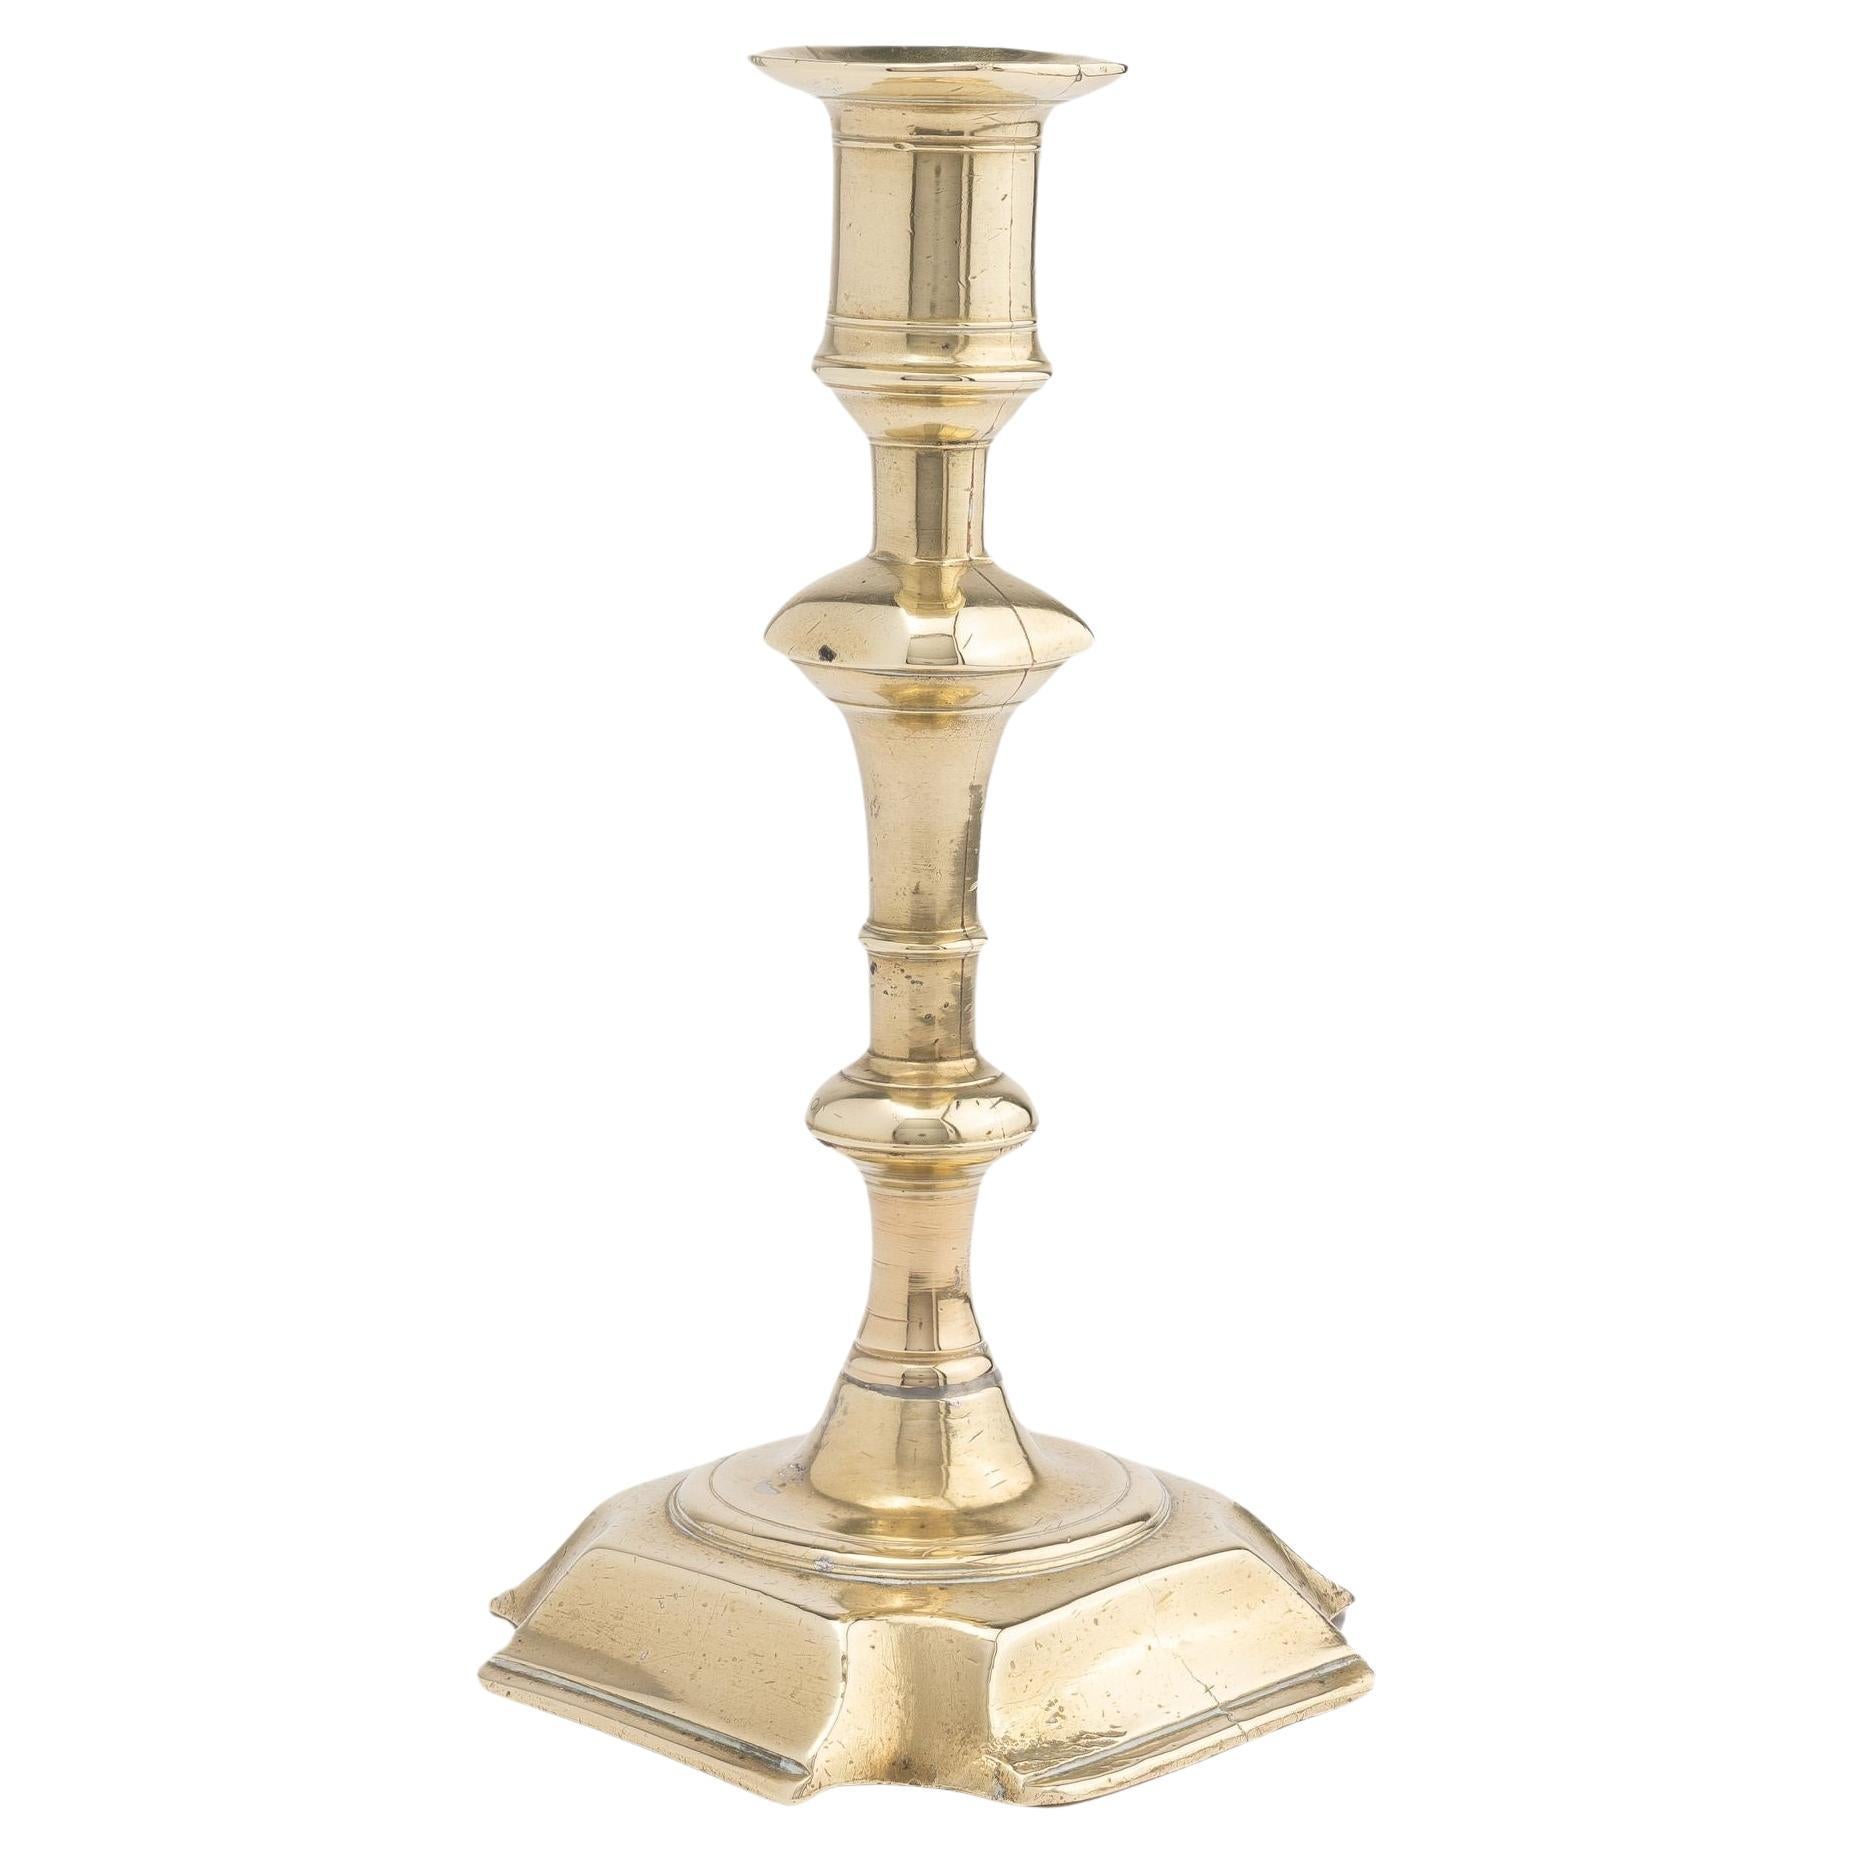 English cast brass Queen Anne candlestick, 1740-50